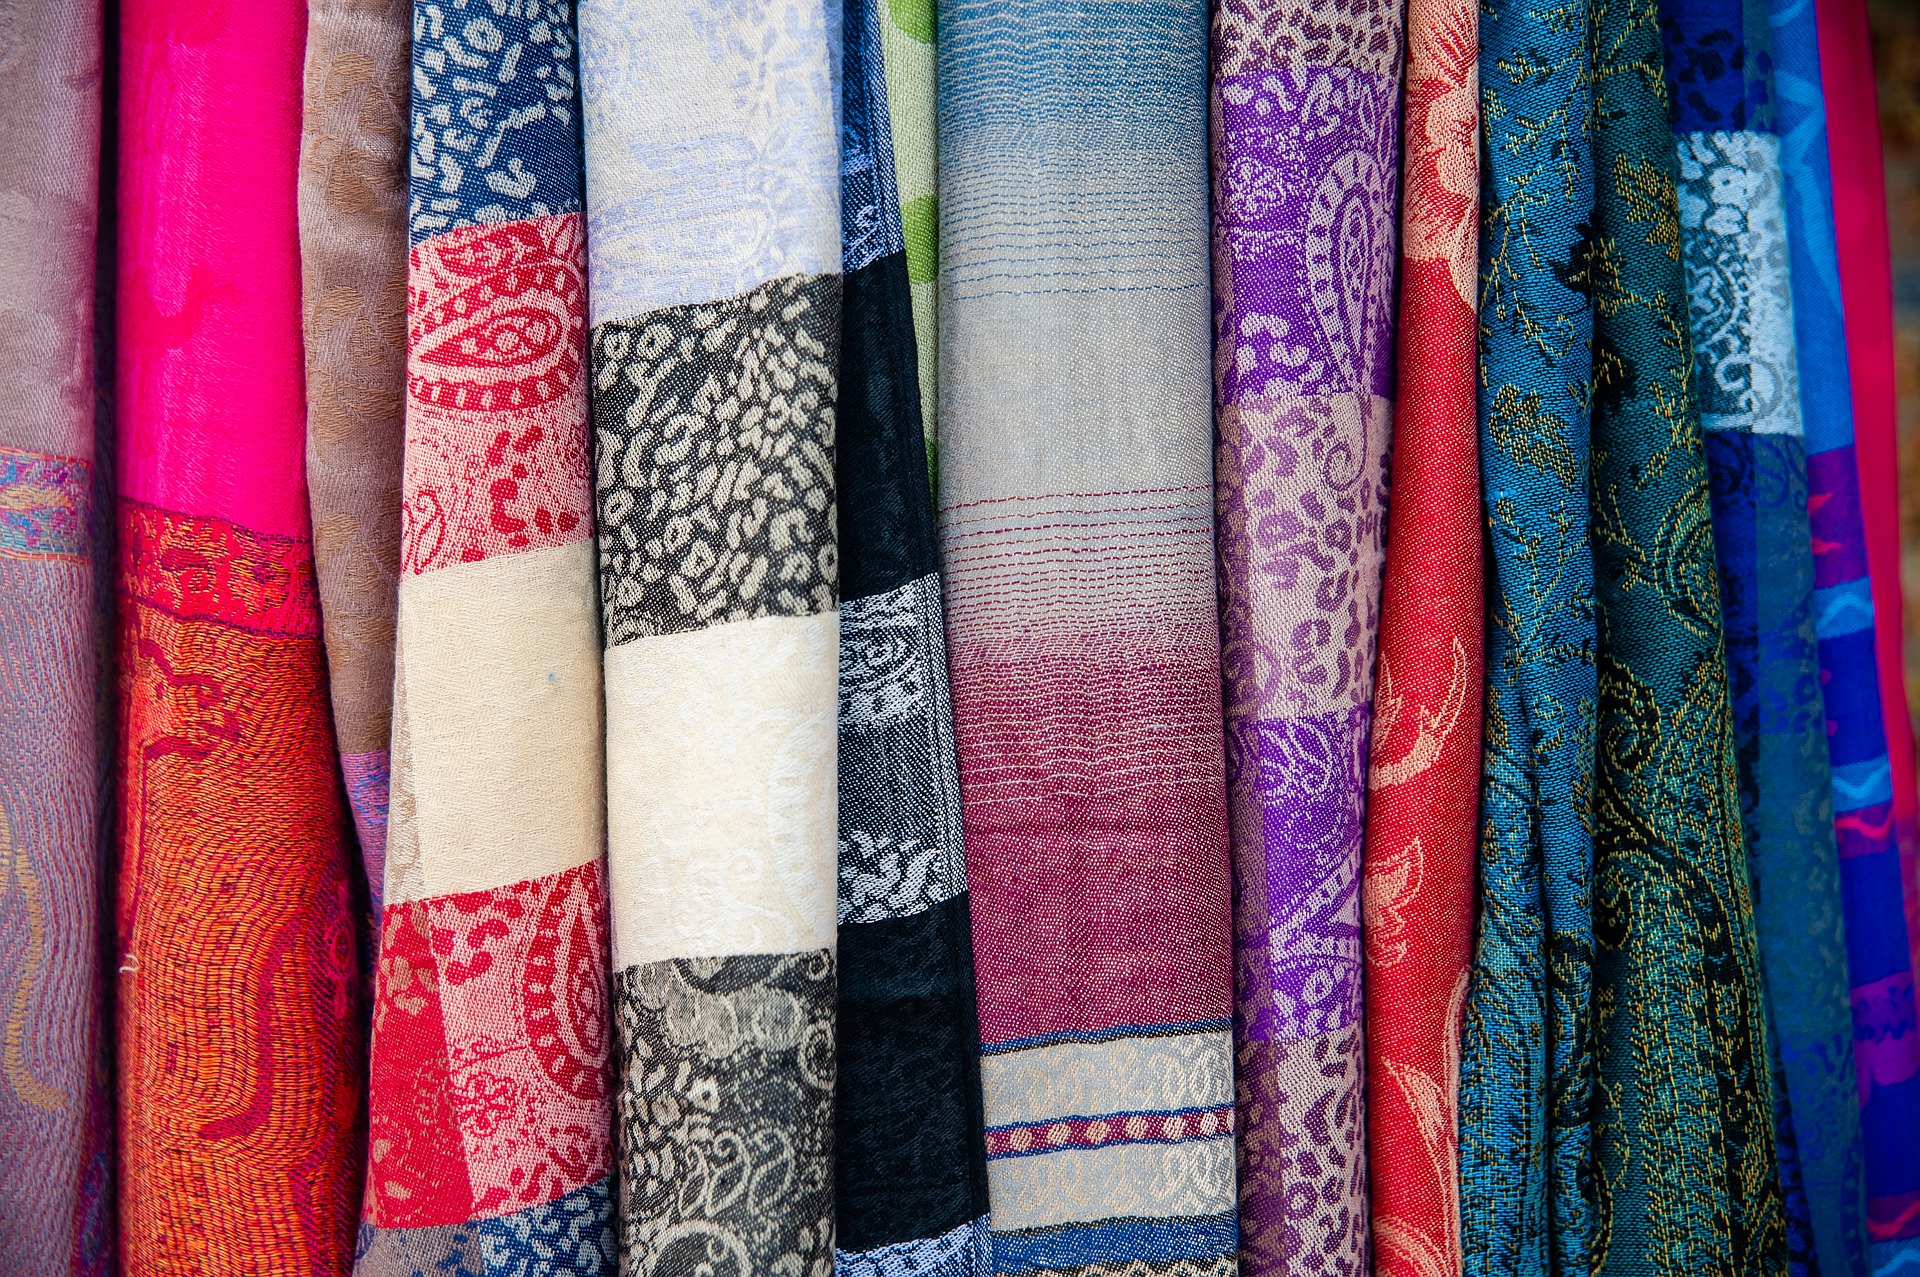 текстильная выставка в сша